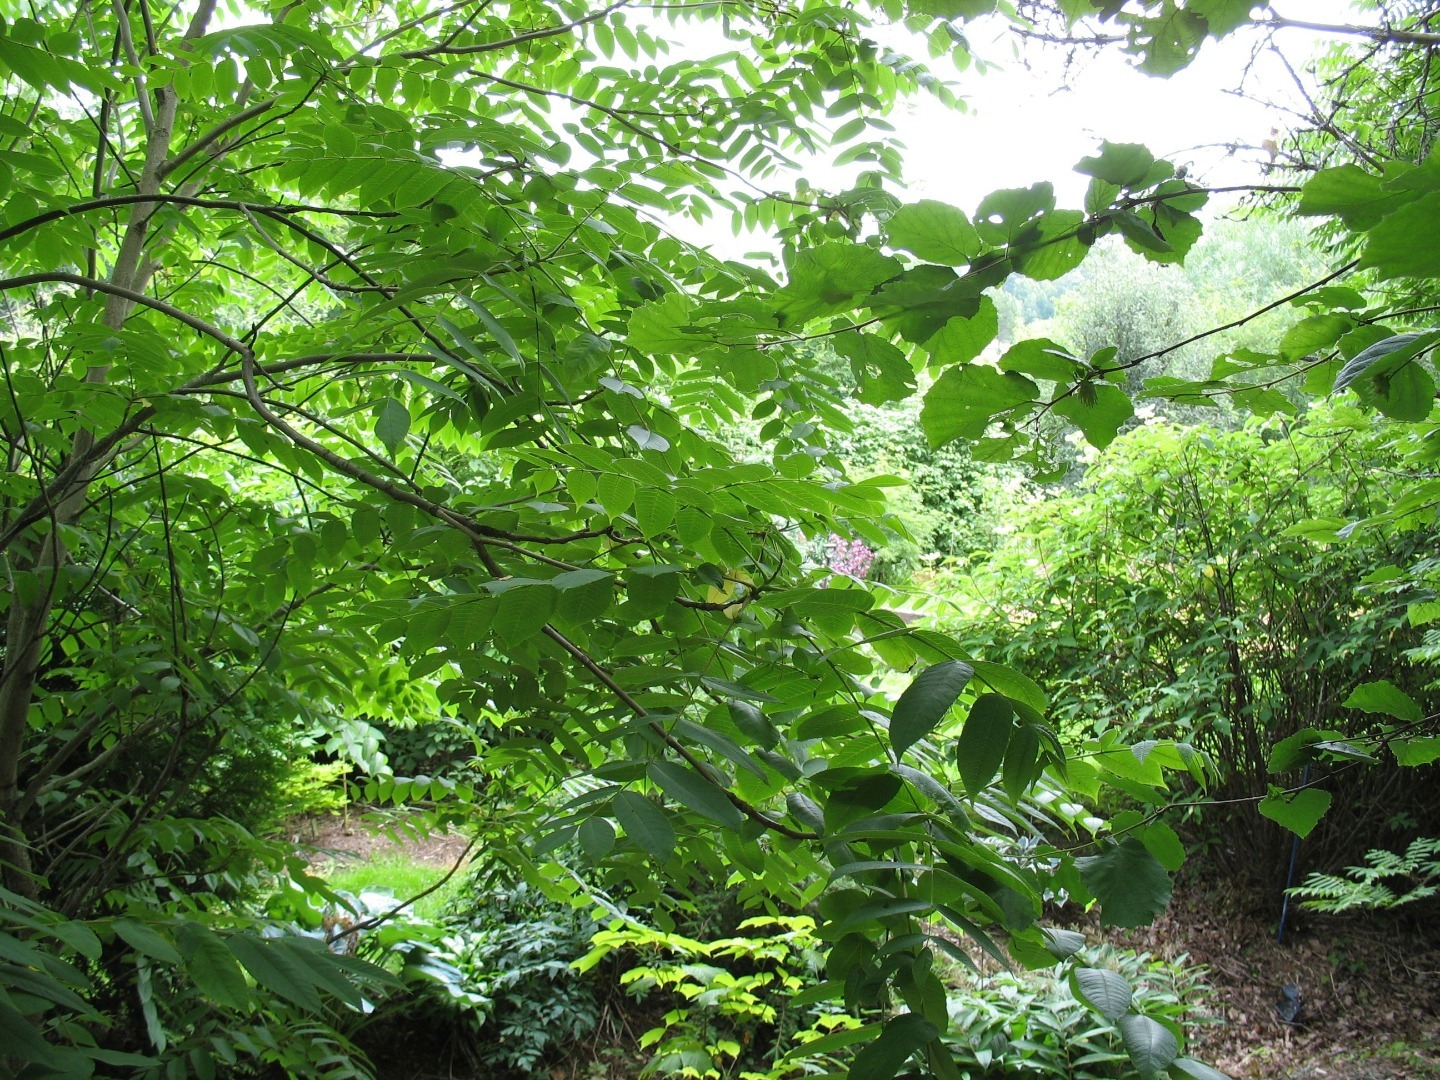 Syötävä metsäpuutarha on suora suomennos englannin kielen termistä Edible Forest Garden. Toisinaan käytetään myös nimiä ruokametsä tai hyötymetsäpuutarha. 